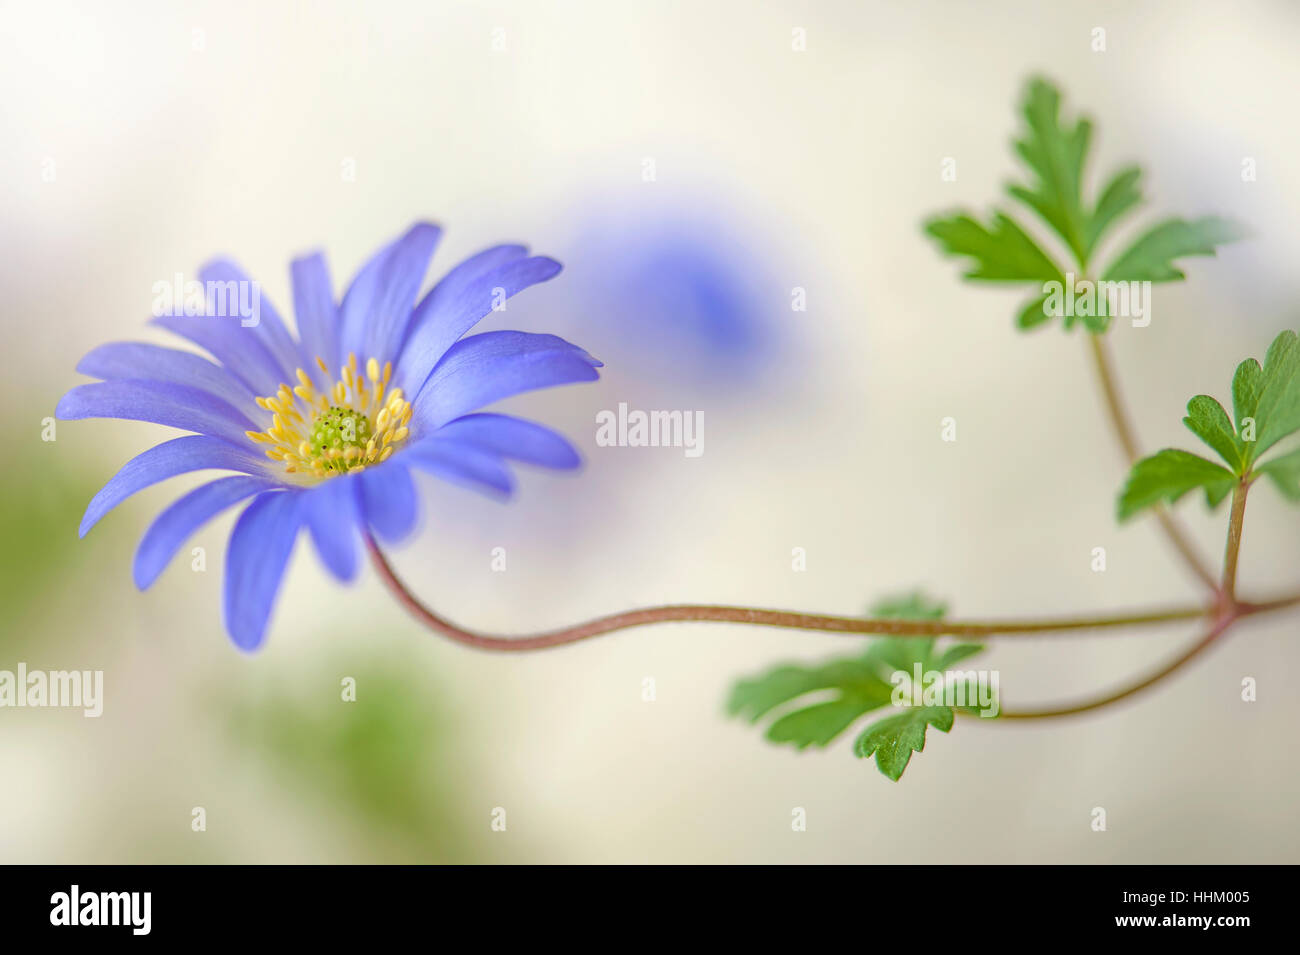 Nahaufnahme Bild der zarte Blüte Anemone Blanda auch bekannt als der Winter Windflower, Aufnahme auf einem weichen Hintergrund blau, Feder. Stockfoto